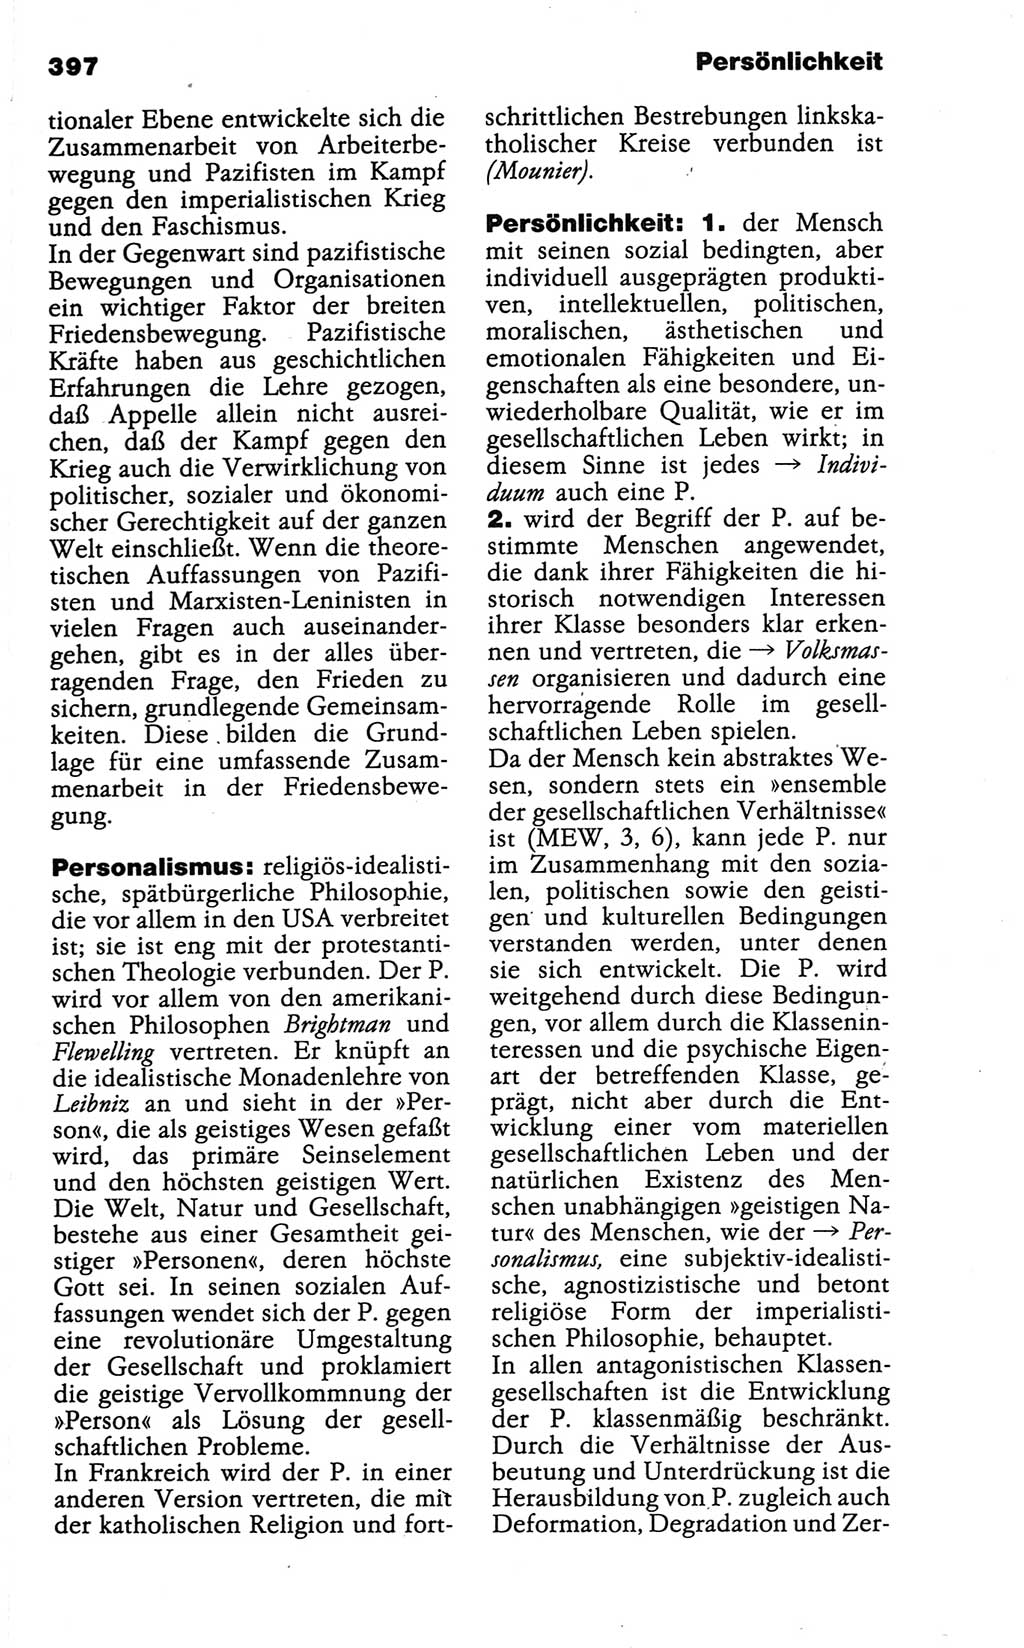 Wörterbuch der marxistisch-leninistischen Philosophie [Deutsche Demokratische Republik (DDR)] 1986, Seite 397 (Wb. ML Phil. DDR 1986, S. 397)